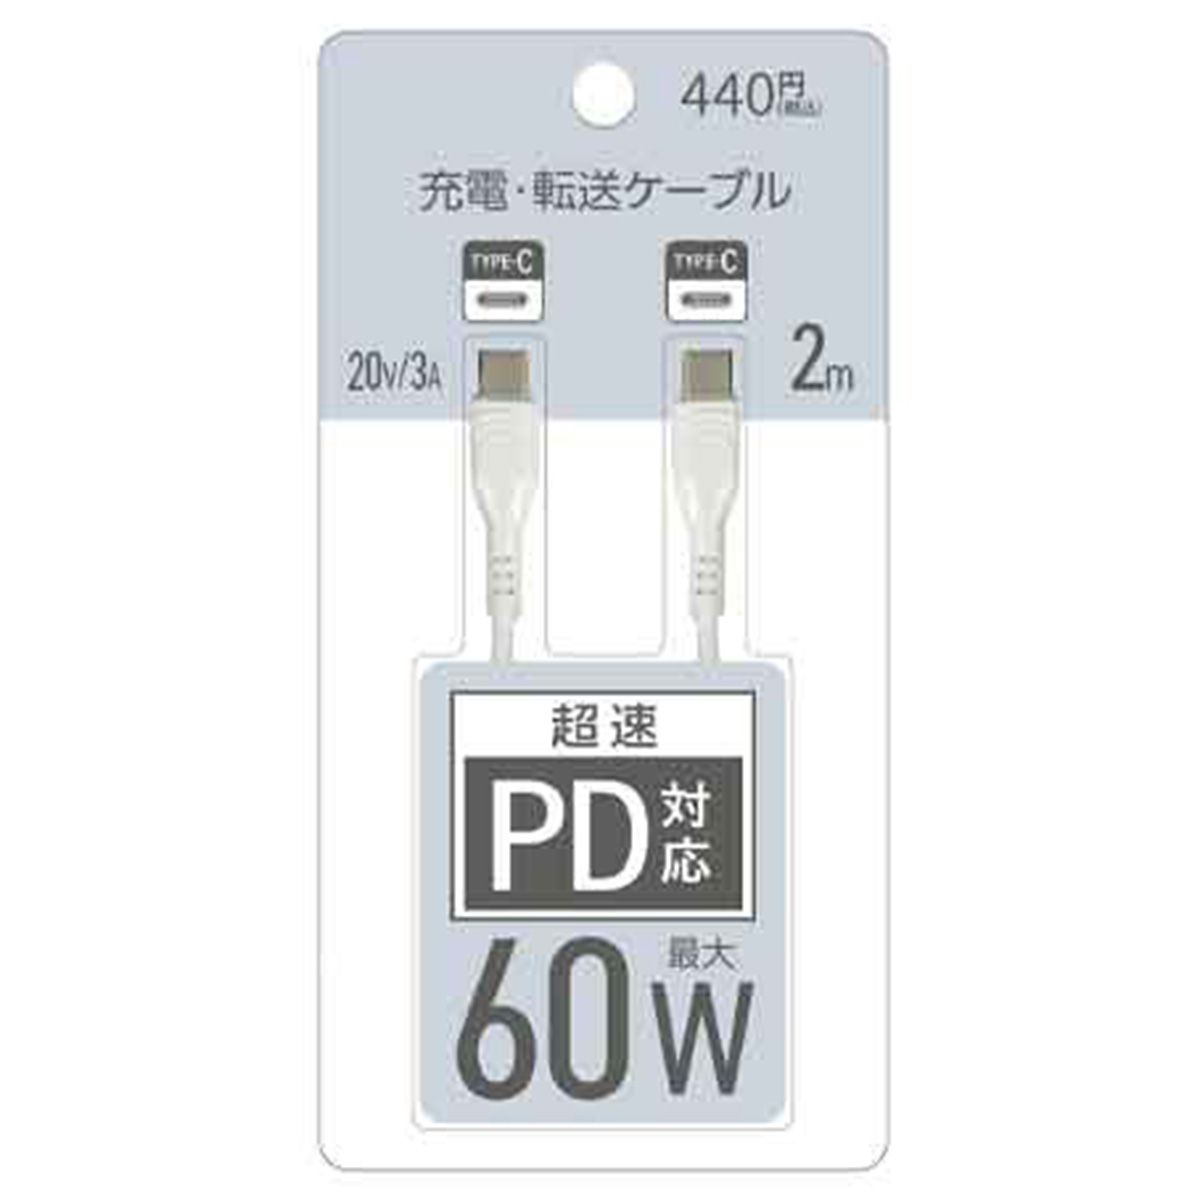 PB.超速PD対応充転ケーブル2m60W ホワイト  1550/053269